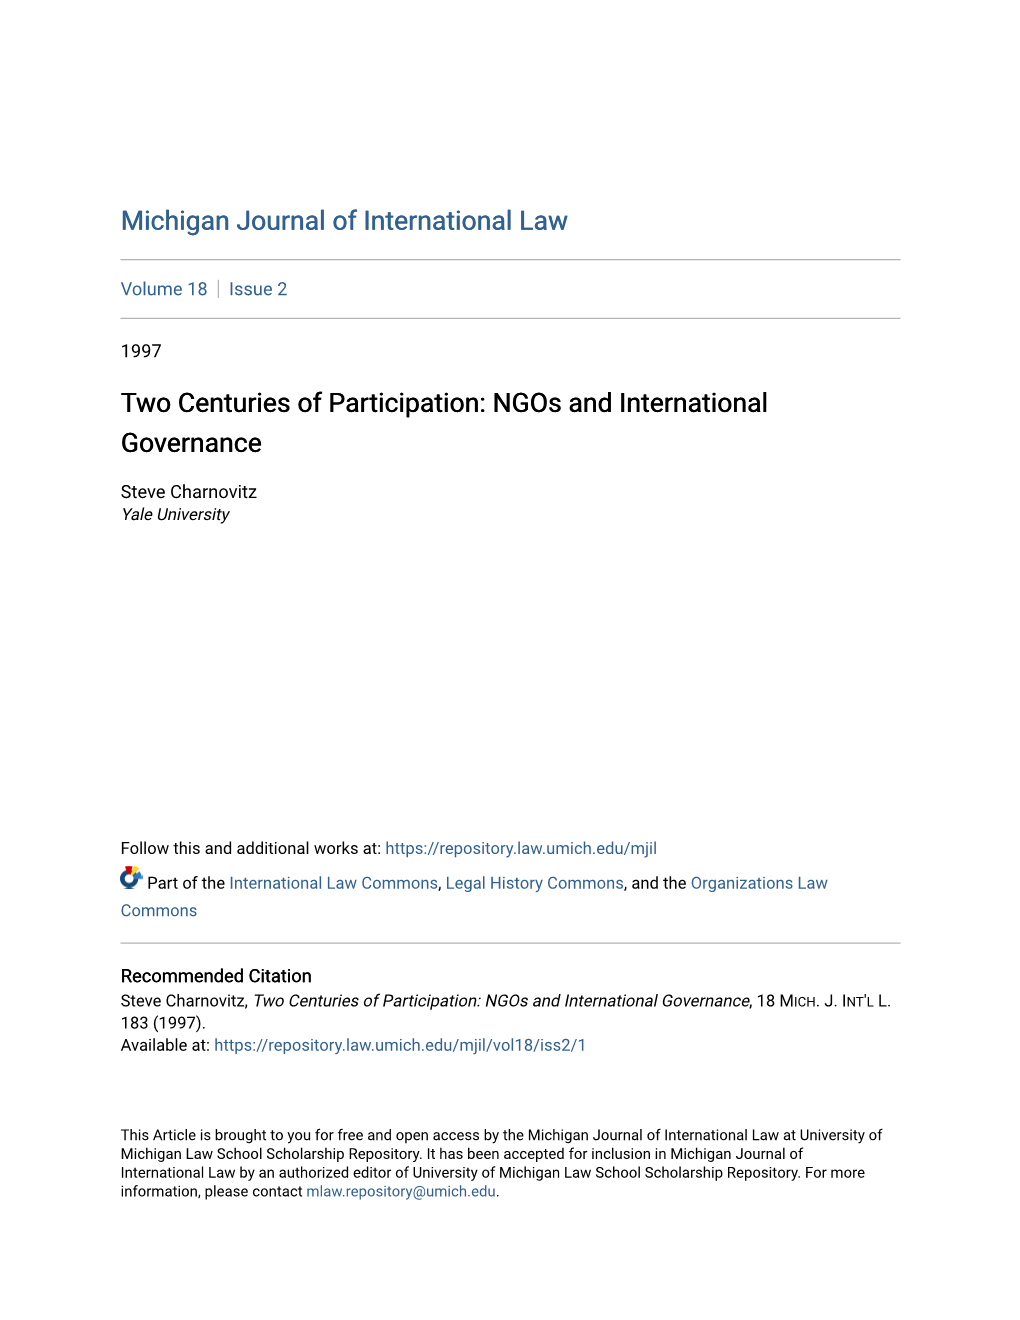 Ngos and International Governance